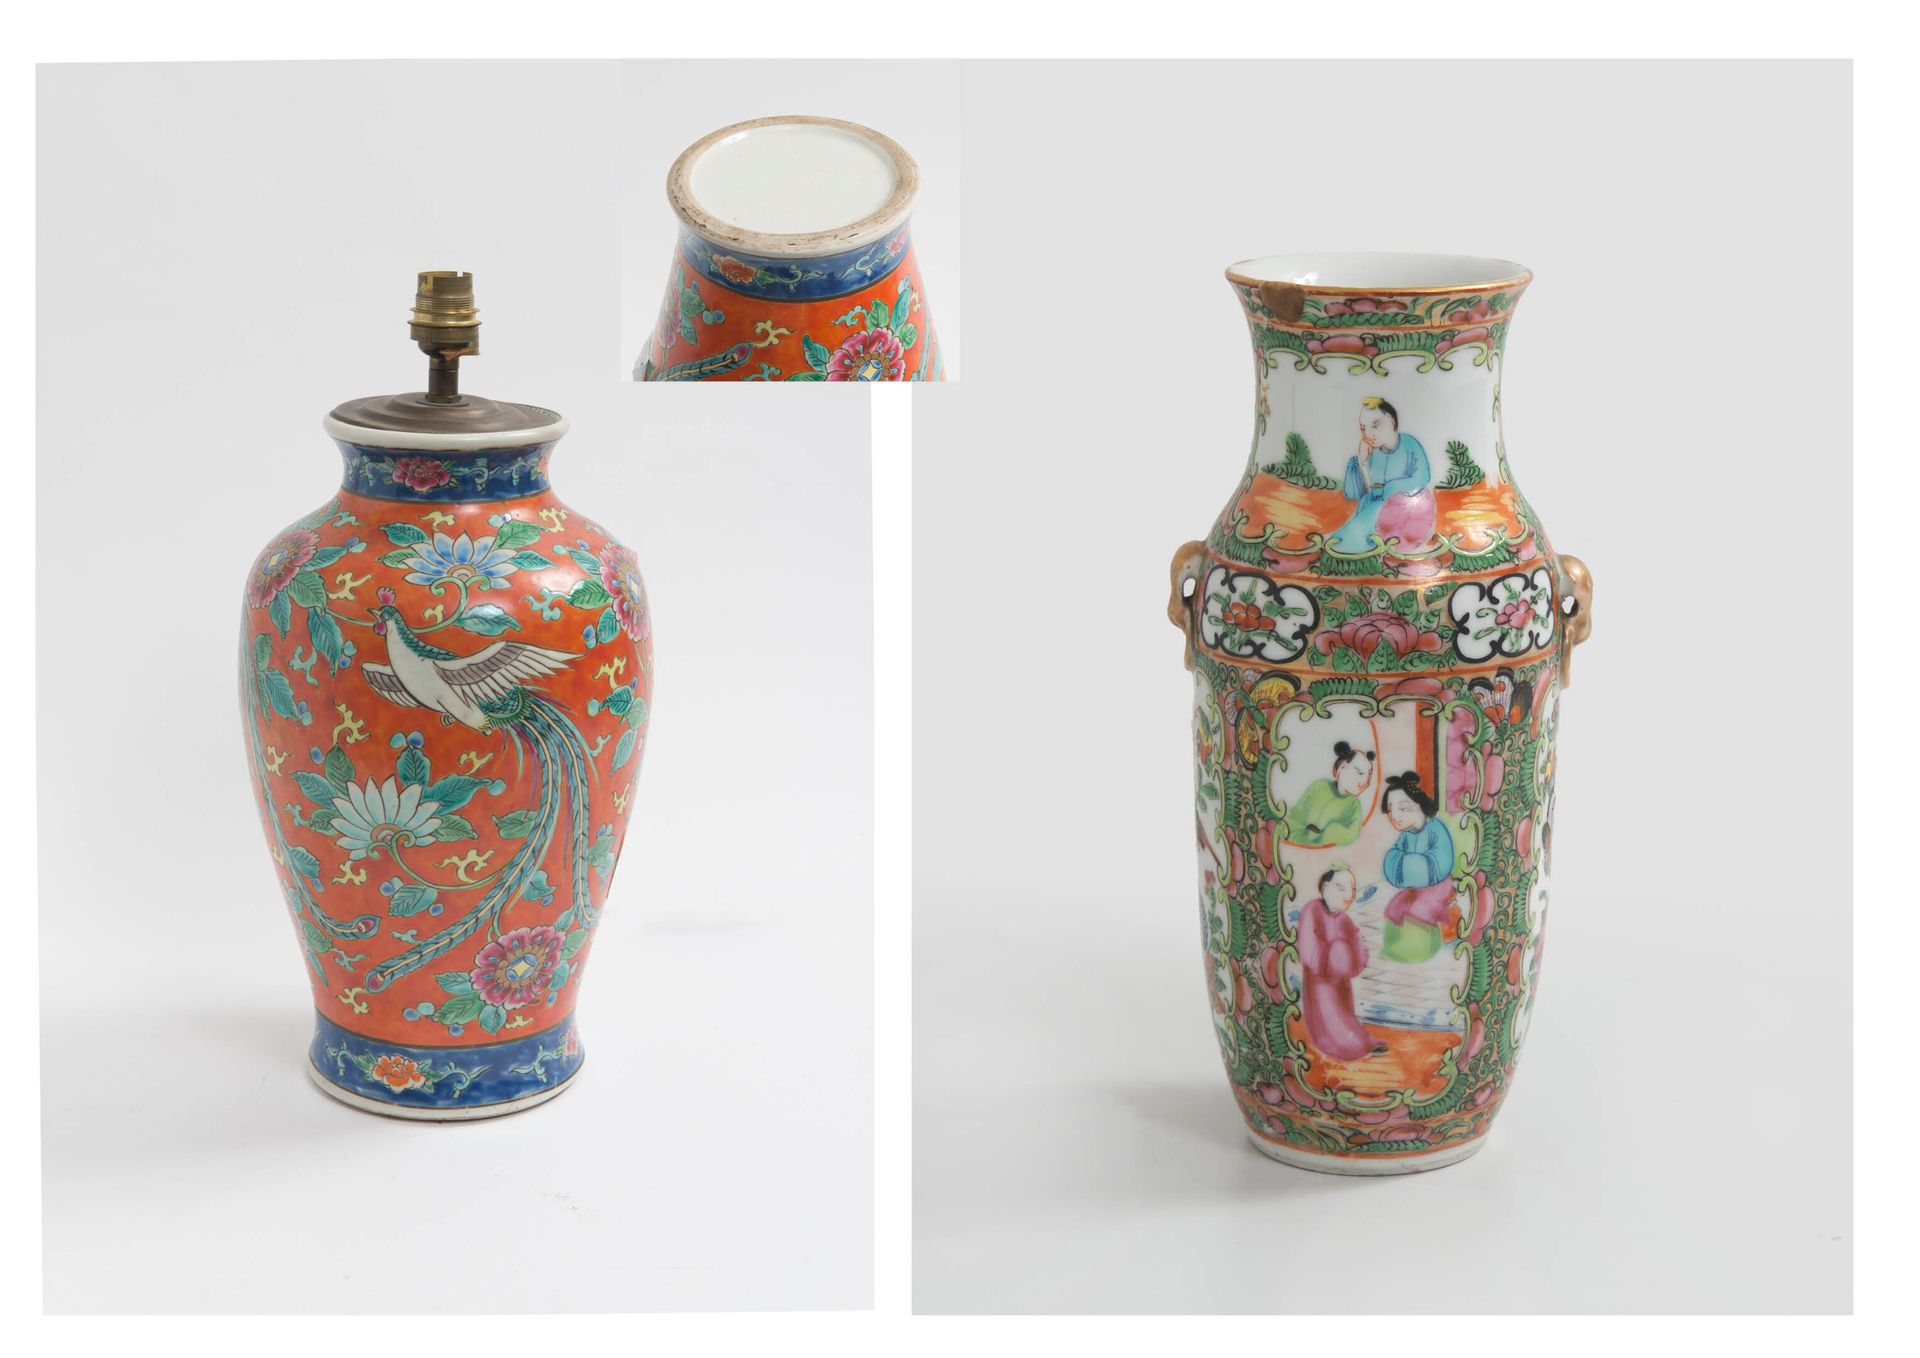 CHINE, XIXème-XXème siècles - Small porcelain vase with polychrome decoration of&hellip;